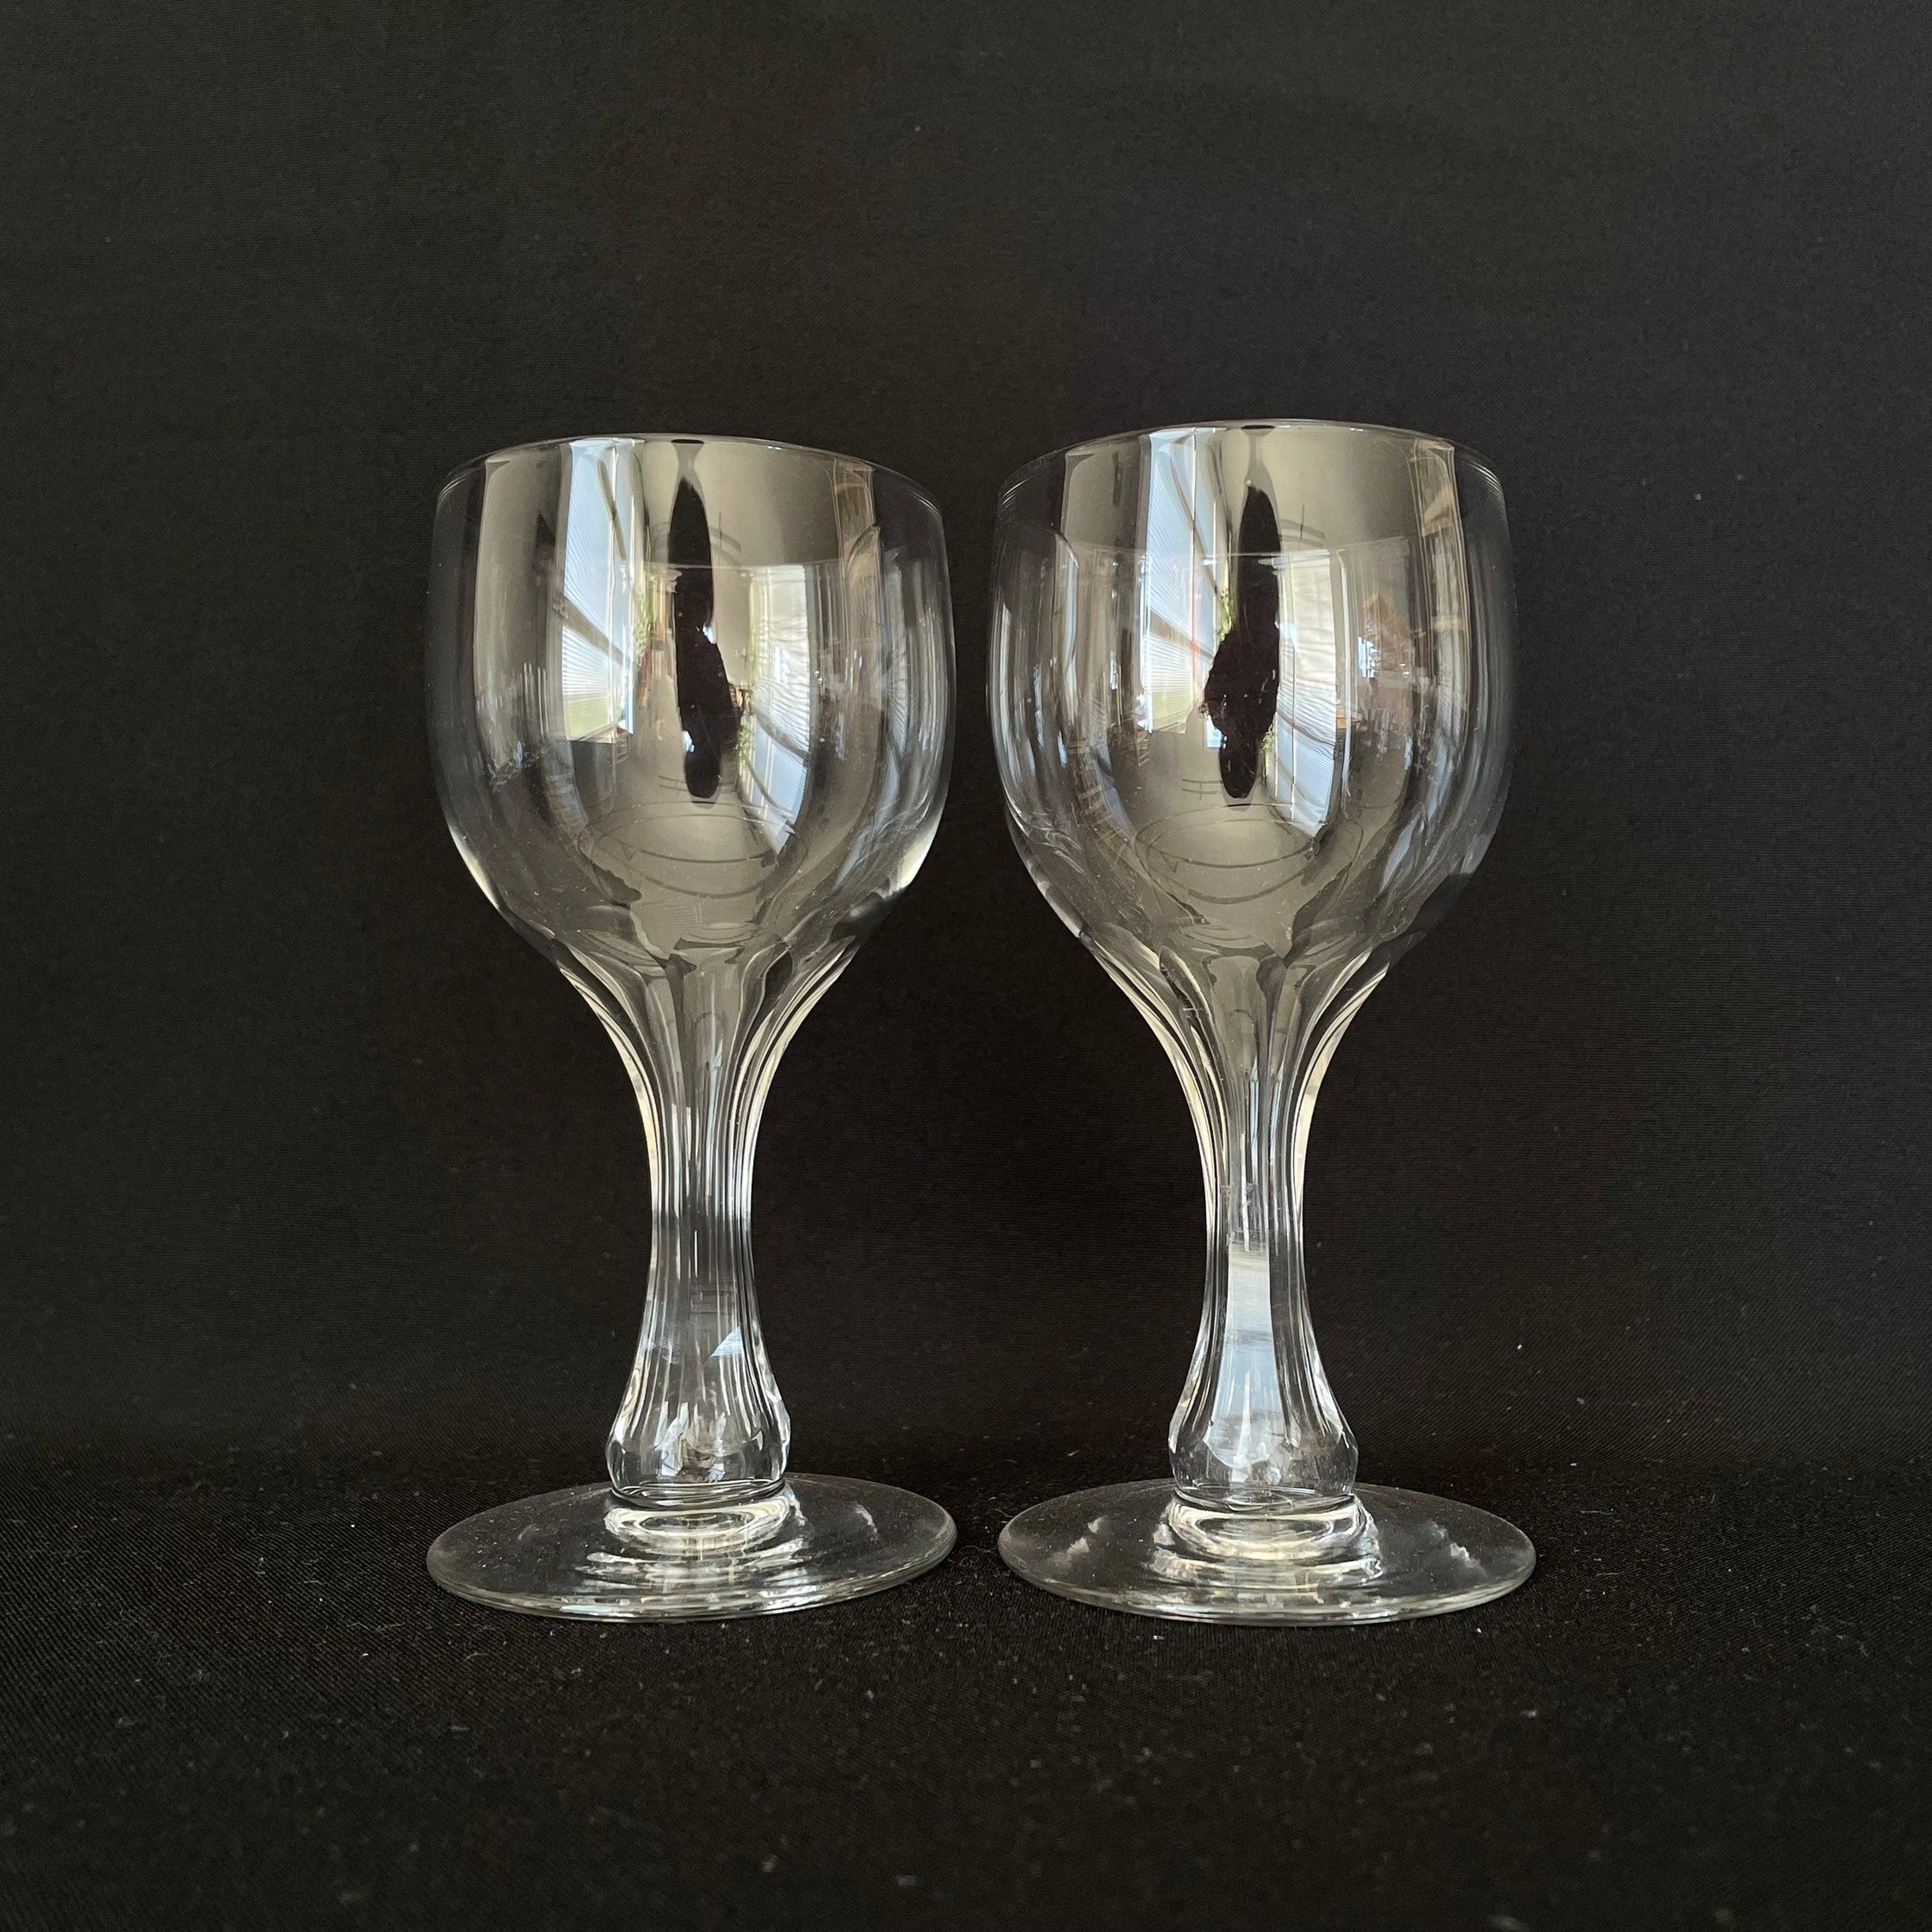 A Rare Hollow Stem English Wine Glass c1745 (item #1328838)